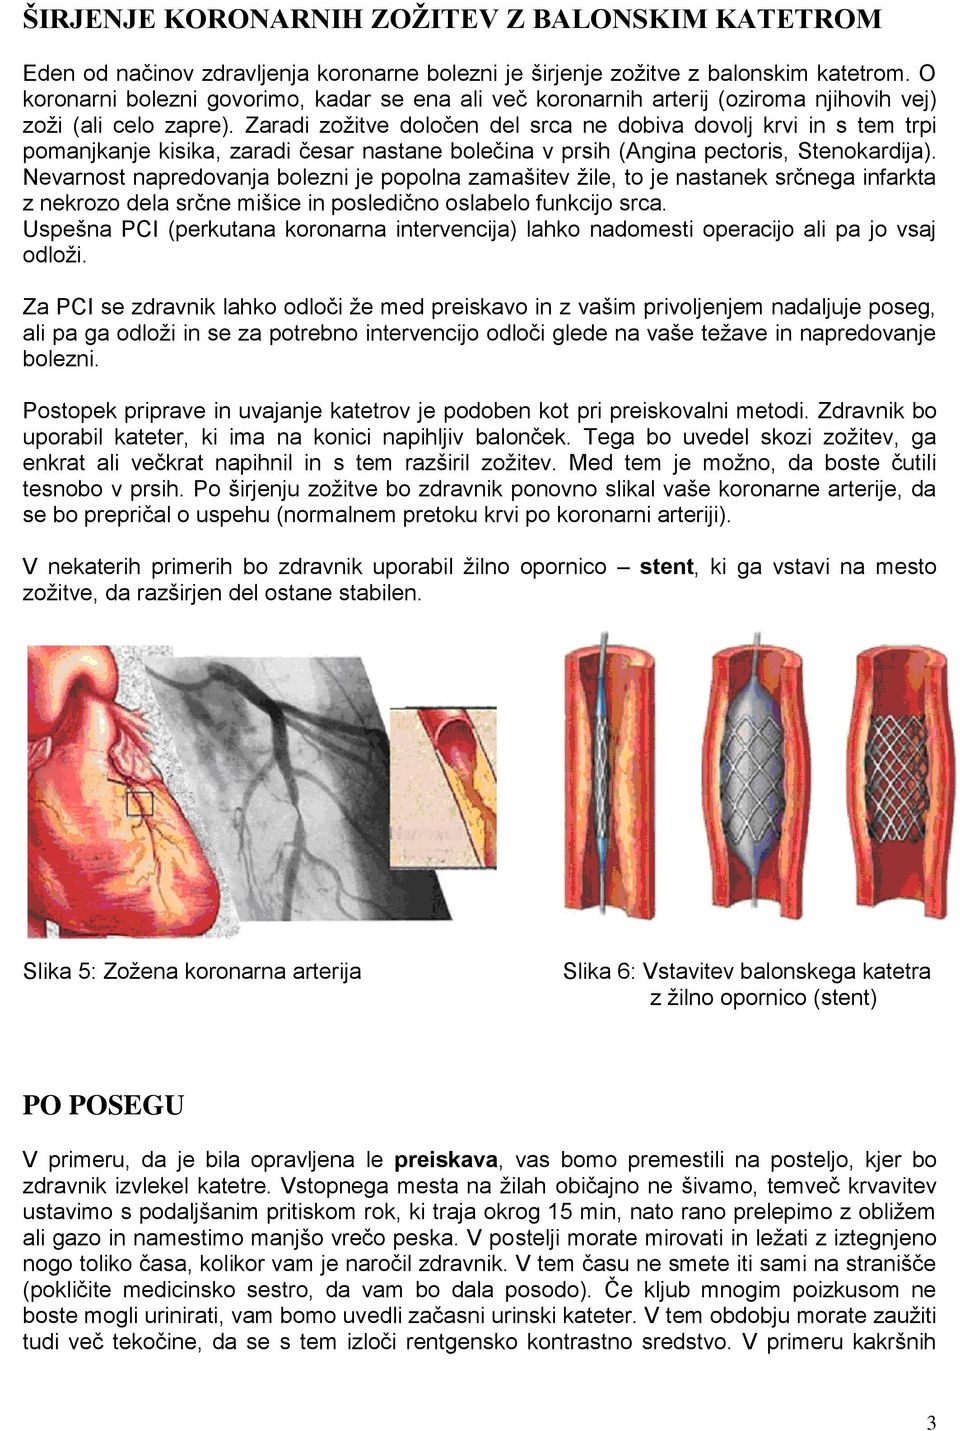 Zaradi zožitve določen del srca ne dobiva dovolj krvi in s tem trpi manjkanje kisika, zaradi česar nastane bolečina v prsih (Angina pectoris, Stenokardija).